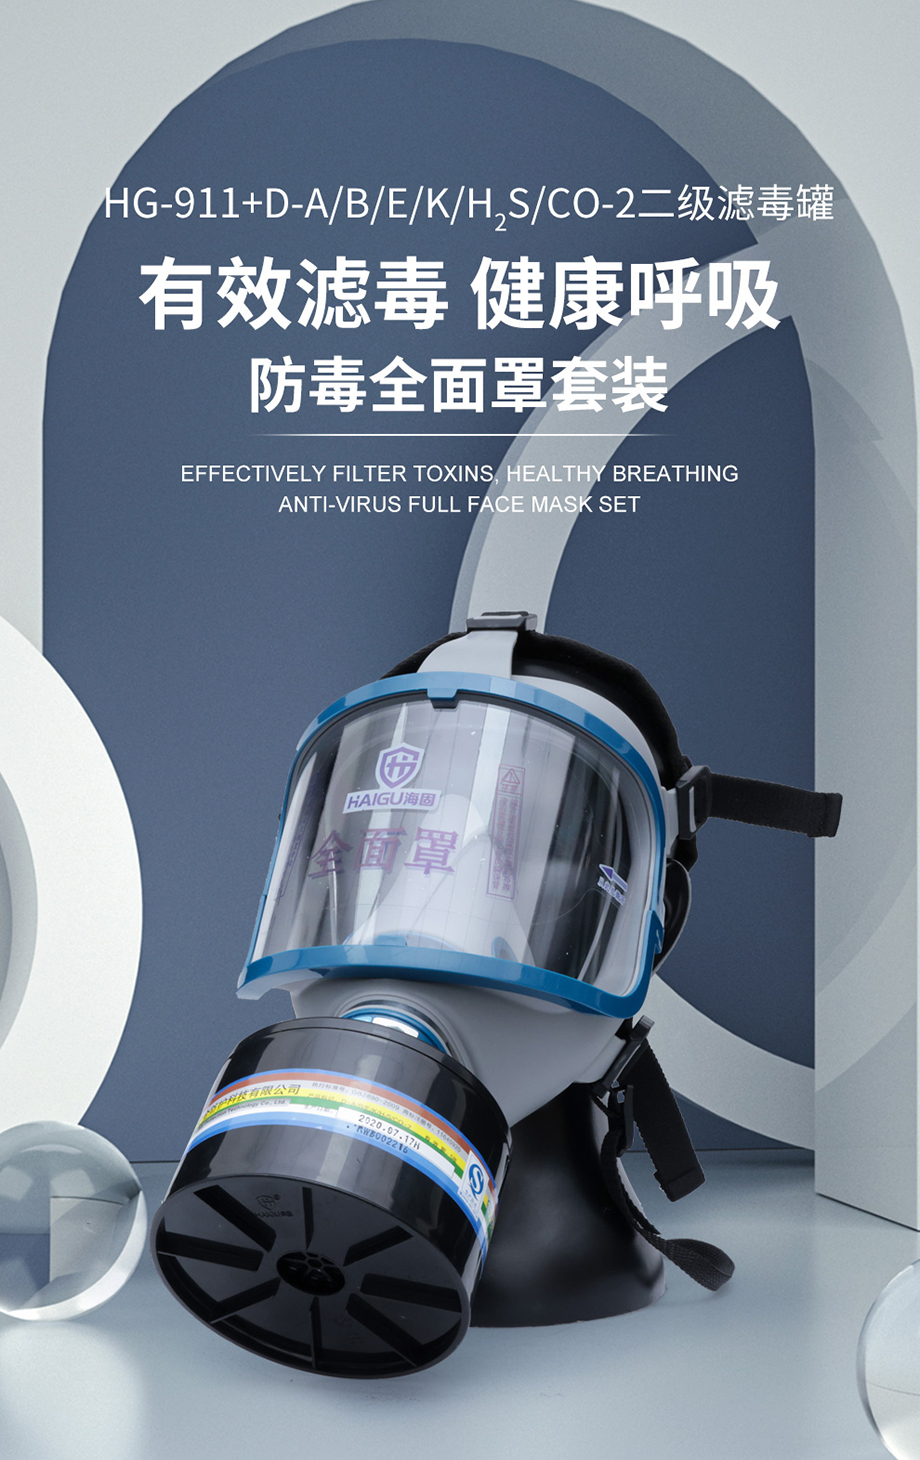 海固全面罩911+D-A/B/E/K/H2S/CO-2 防毒面具全面罩防护综合气体